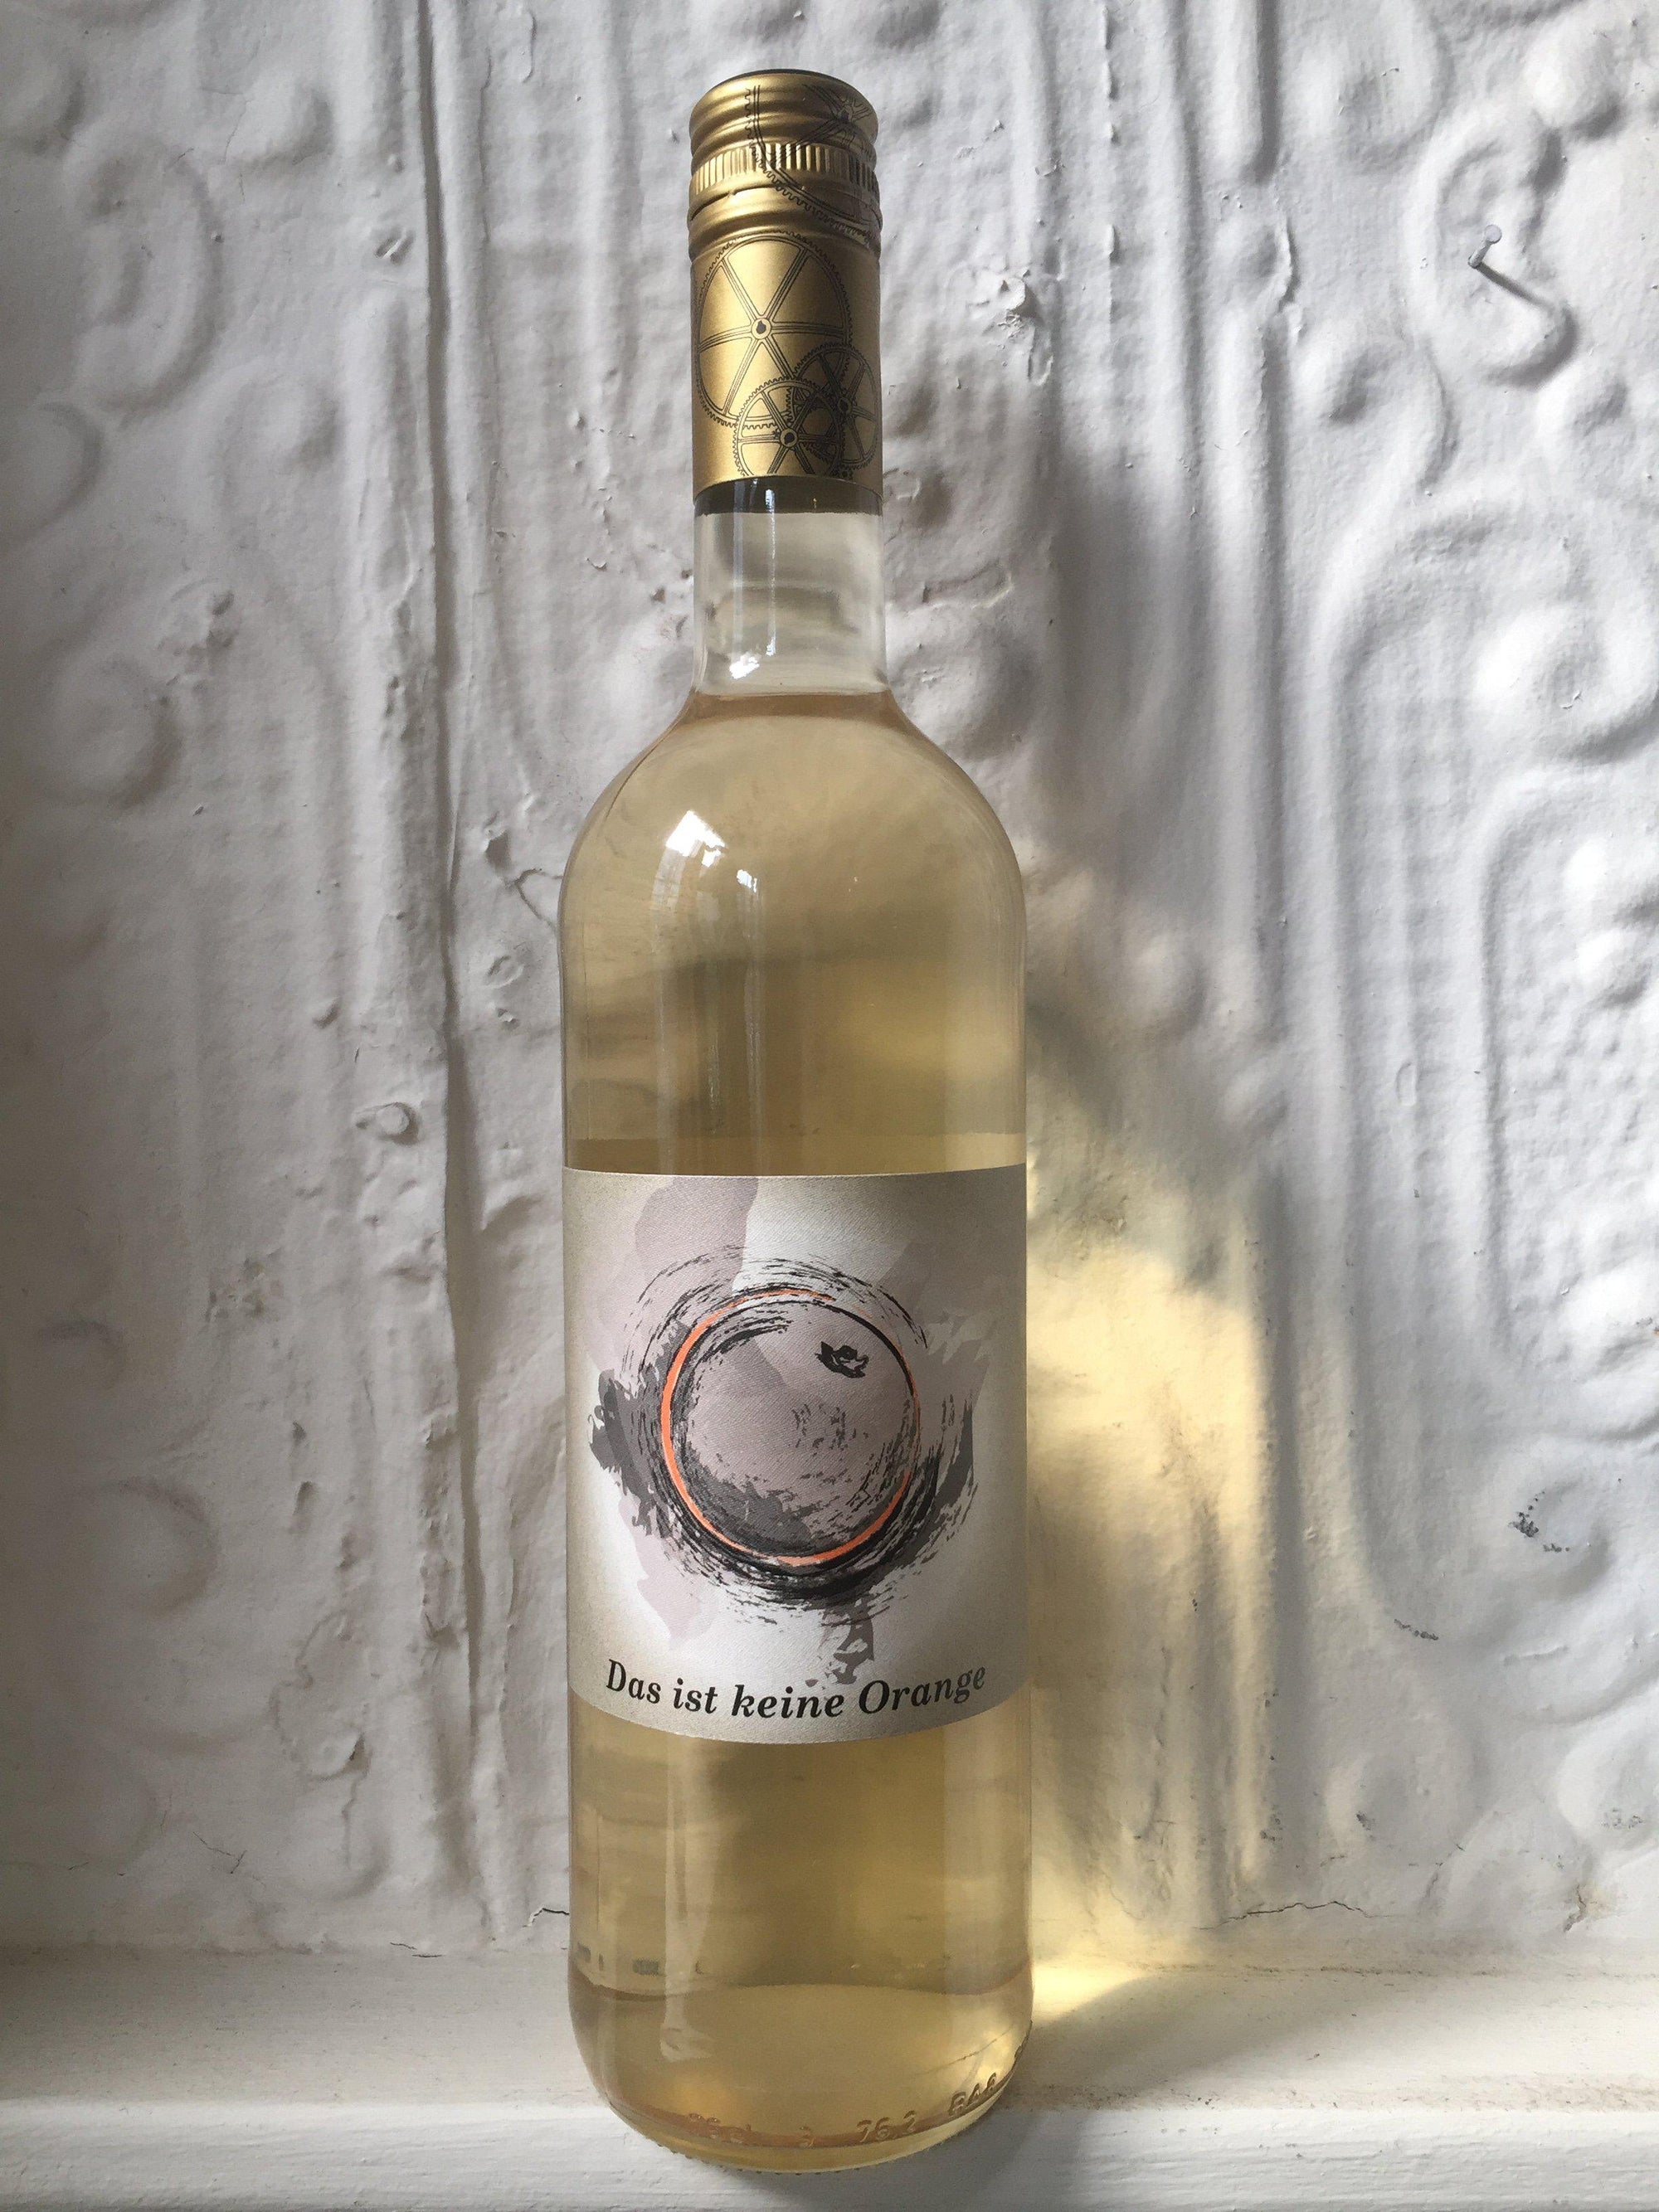 Das ist kein Orange, Weingut Schlossmuhlenhof 2020 (Rheinhessen, Germany)-Wine-Bibber & Bell